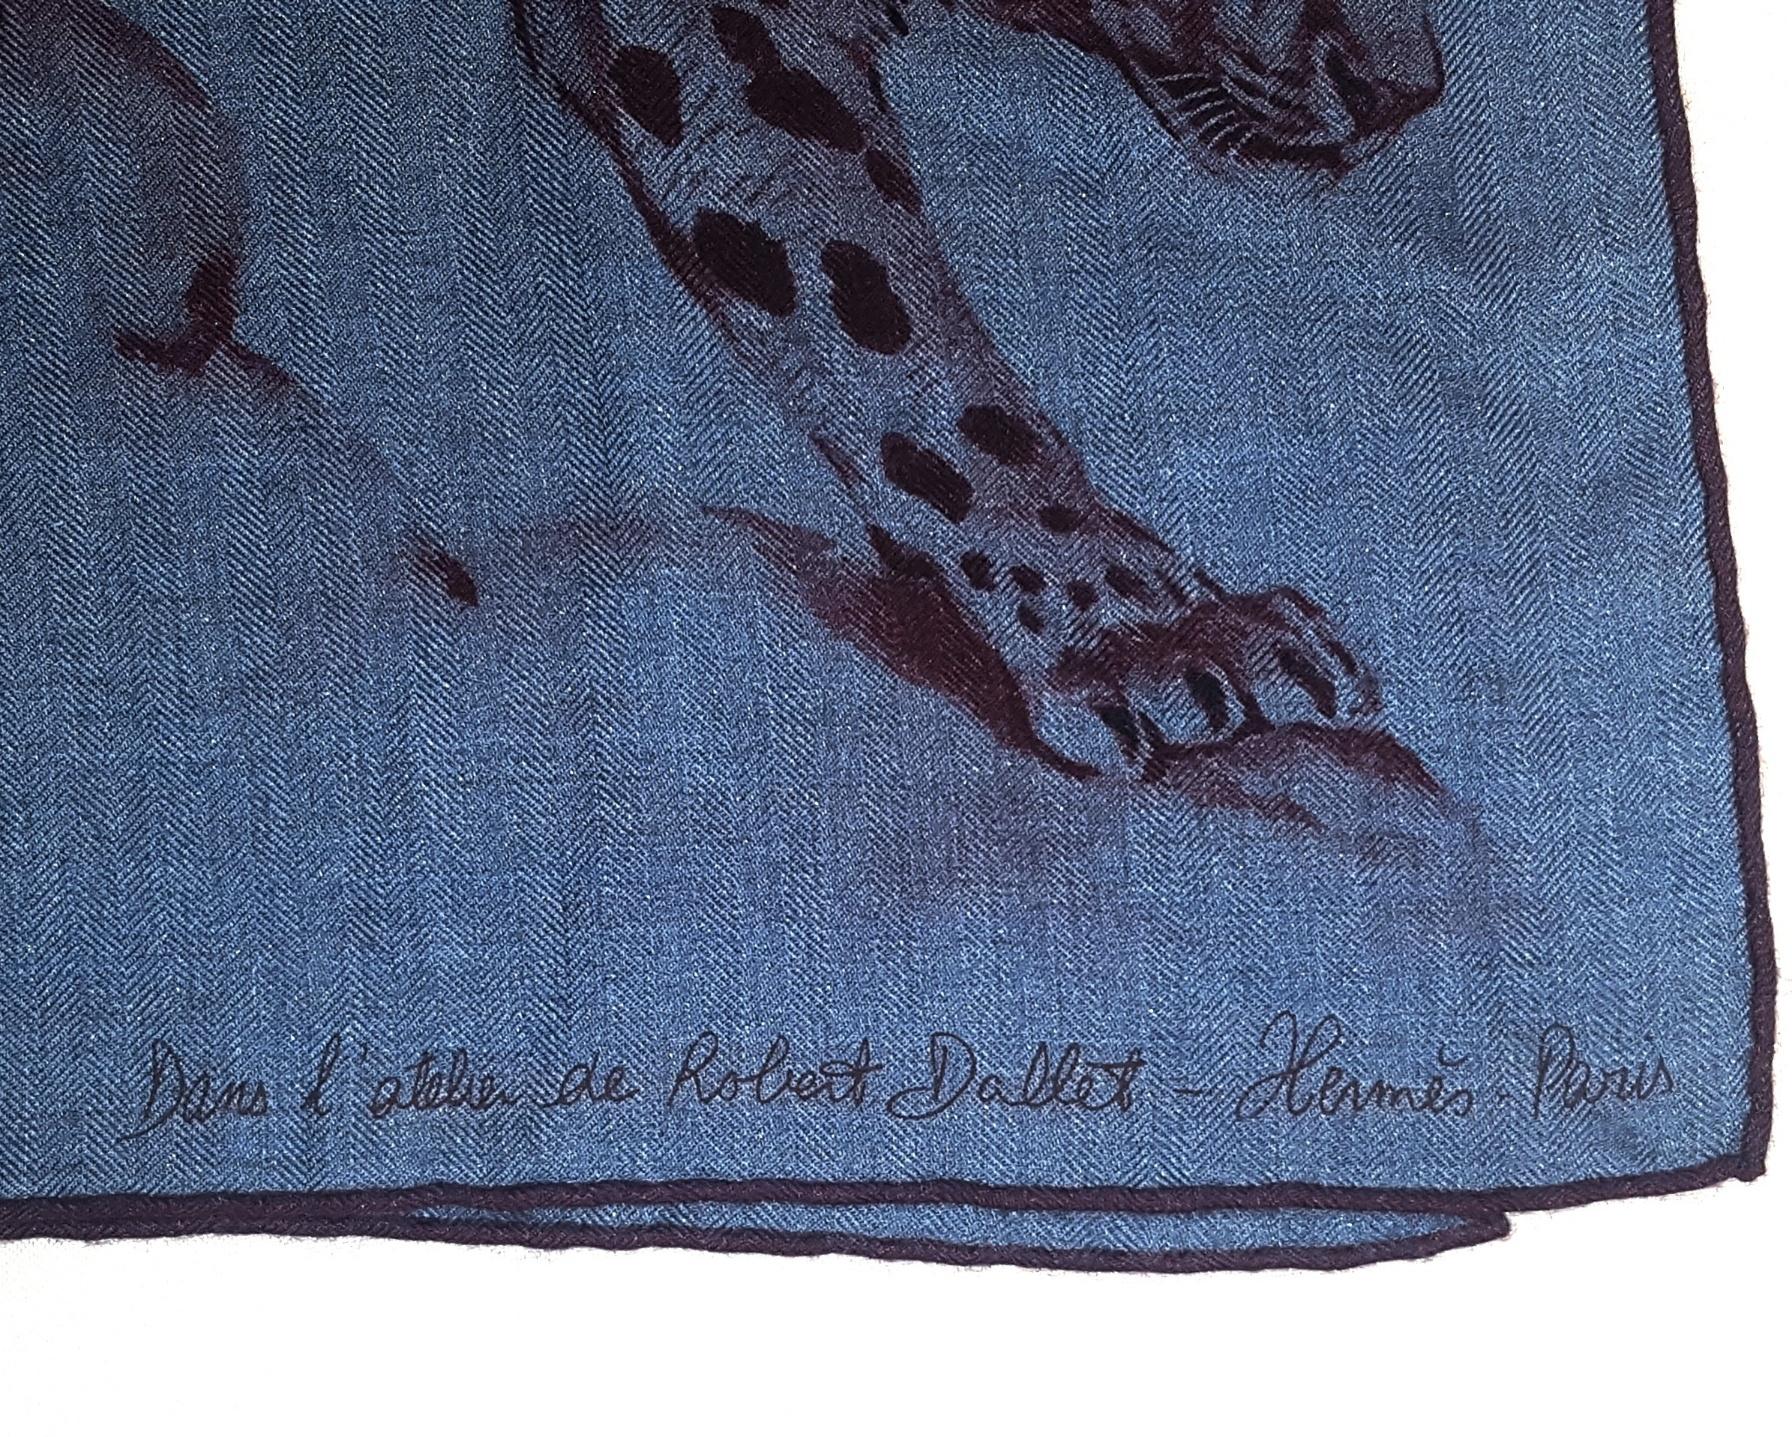  Hermès Scarf/Wrap Dans L'atelier de Robert Dallet Anthracite Tone & Burgundy For Sale 2